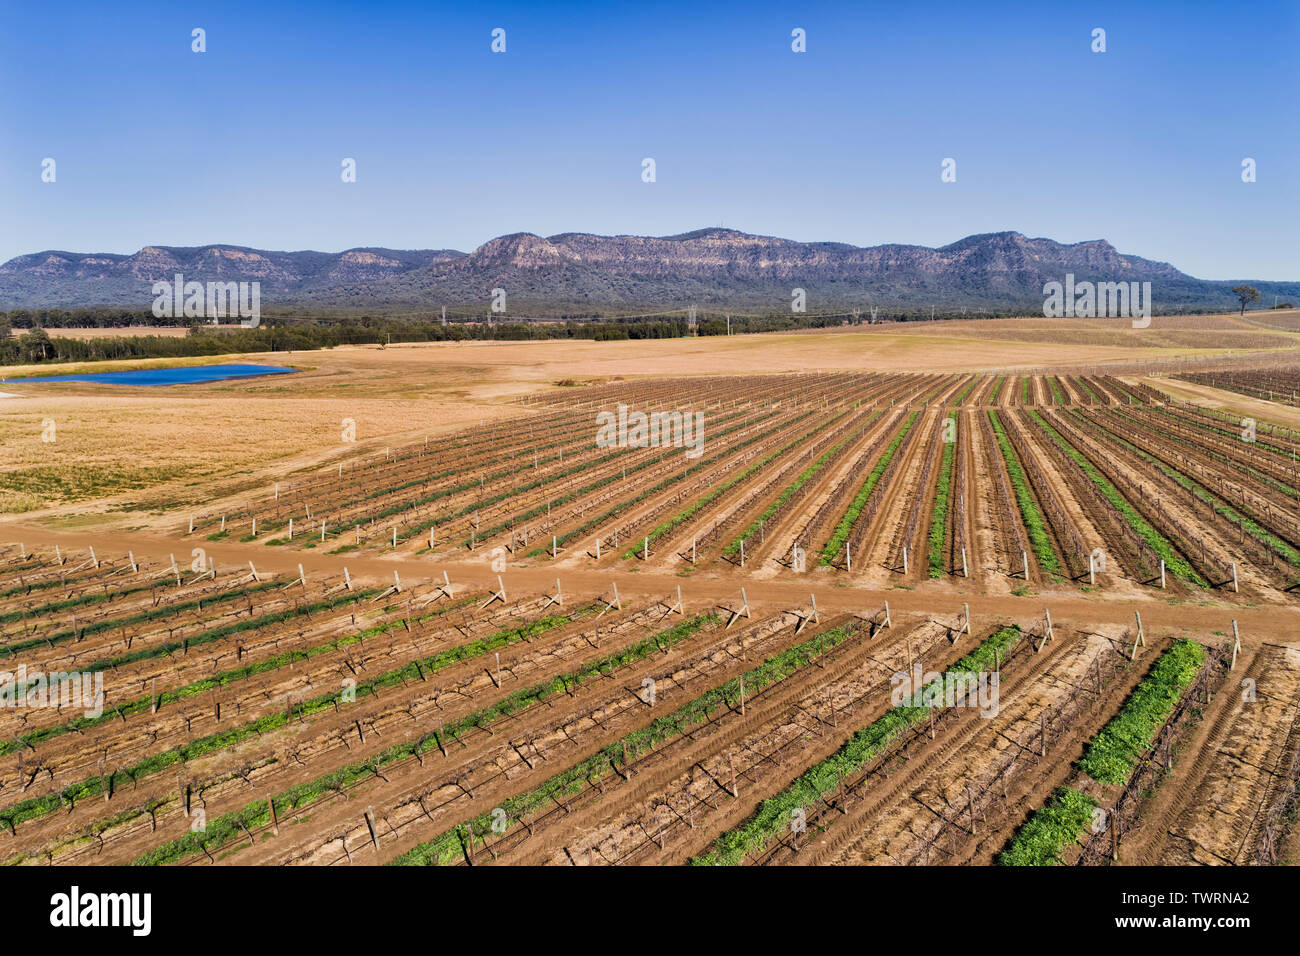 Gerade angebaut Reihen von ruhen Weinberge in Hunter Valley Weinregion Australiens zwischen den Jahreszeiten von oben nach Pokolbin Bereich gesehen. Stockfoto